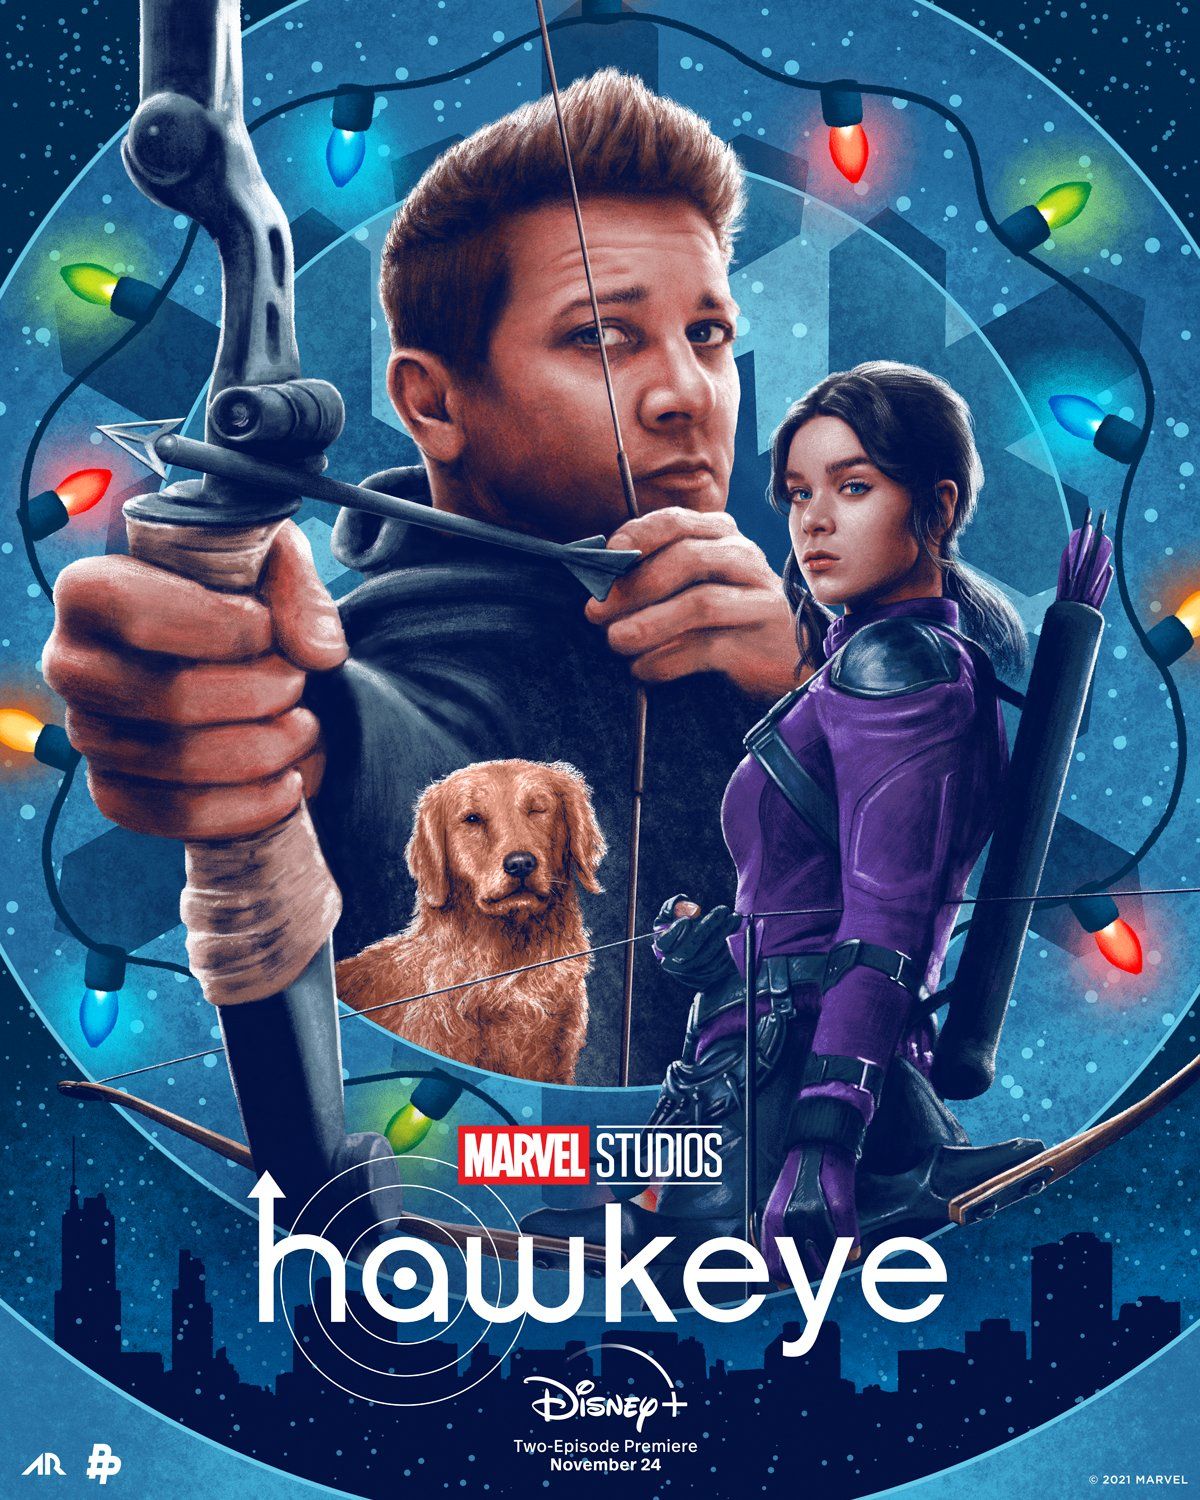 Hawkeye series poster image